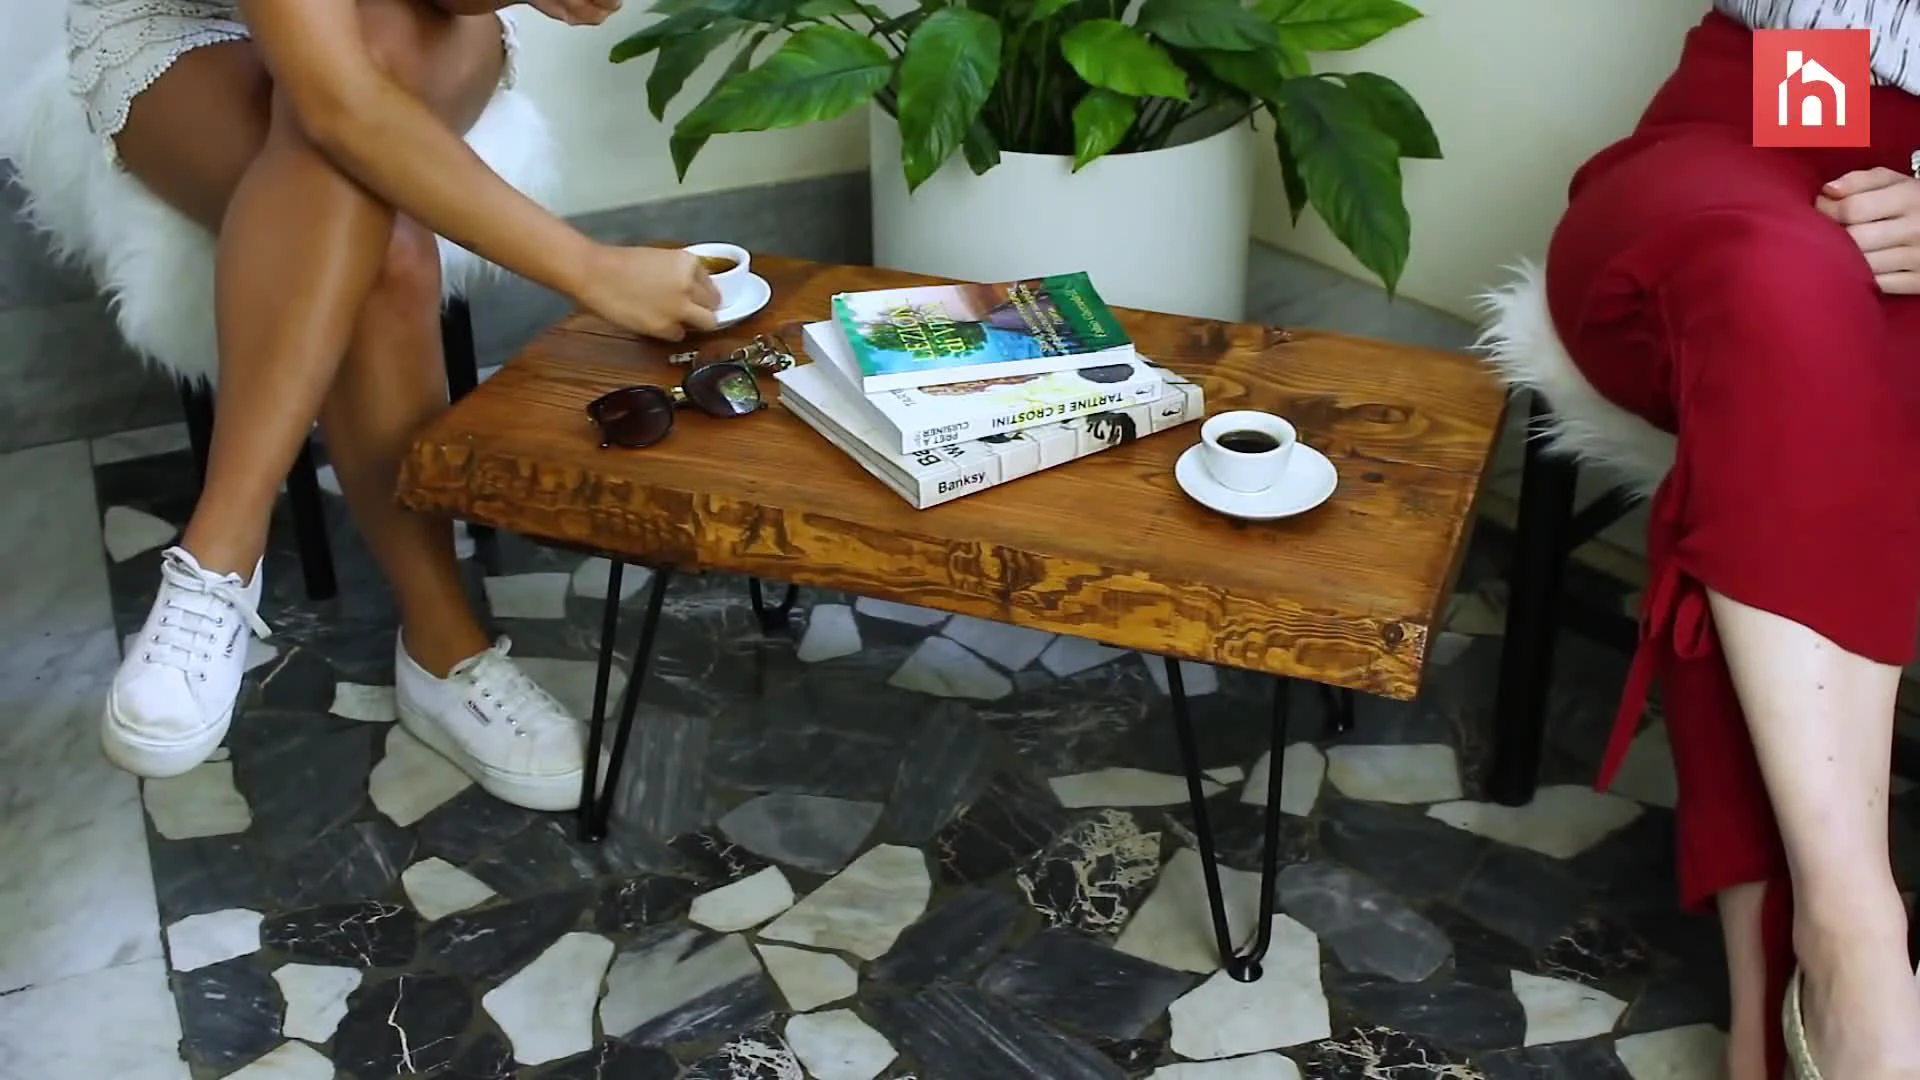 Декор стола своими руками: 15 идей для создания дизайнерской мебели